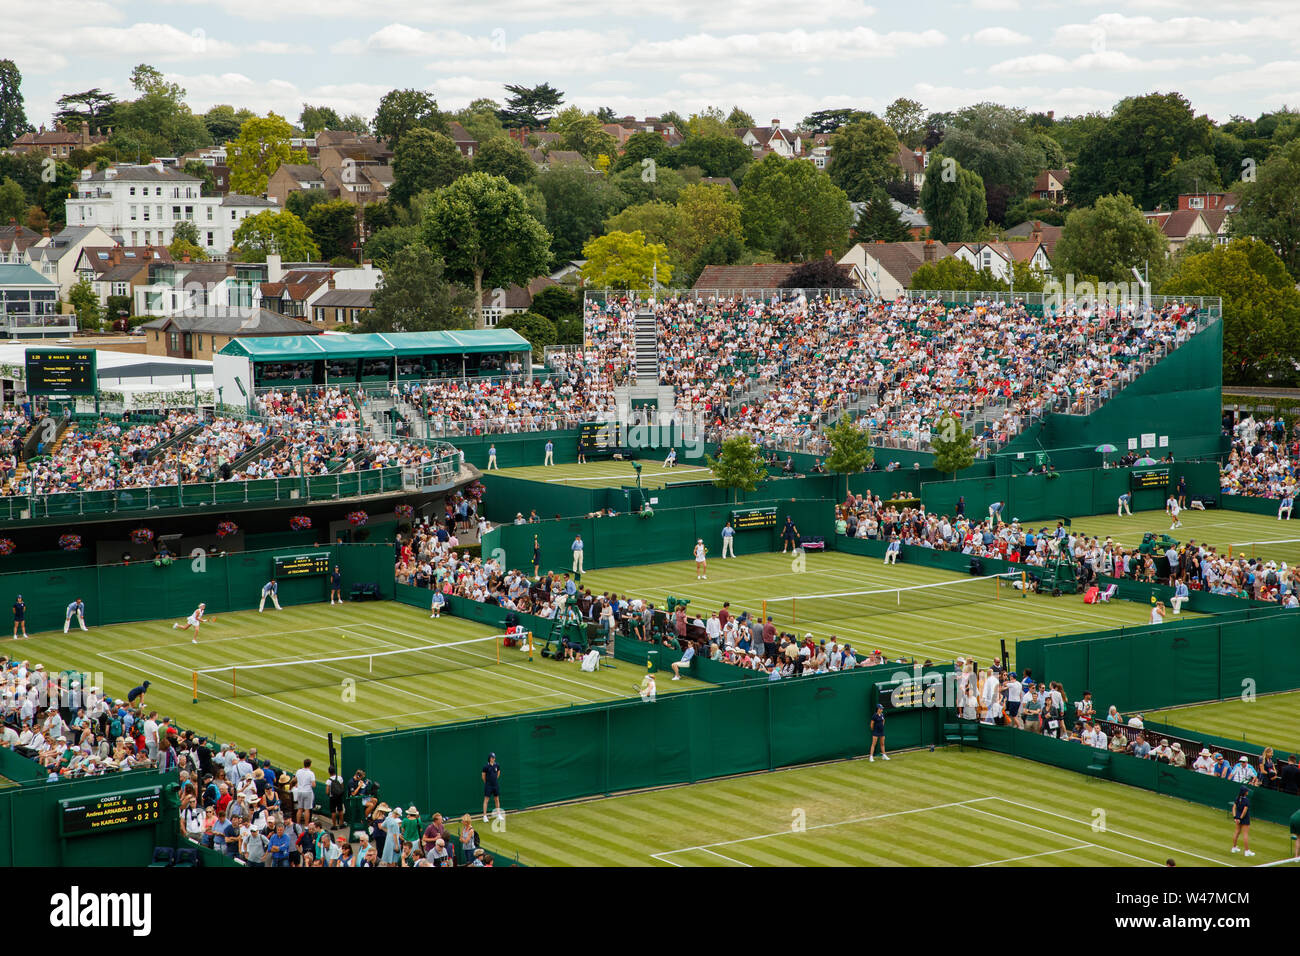 Vue générale au Wimbledon Championships 2019. Tenue à l'All England Lawn Tennis Club, Wimbledon. Banque D'Images